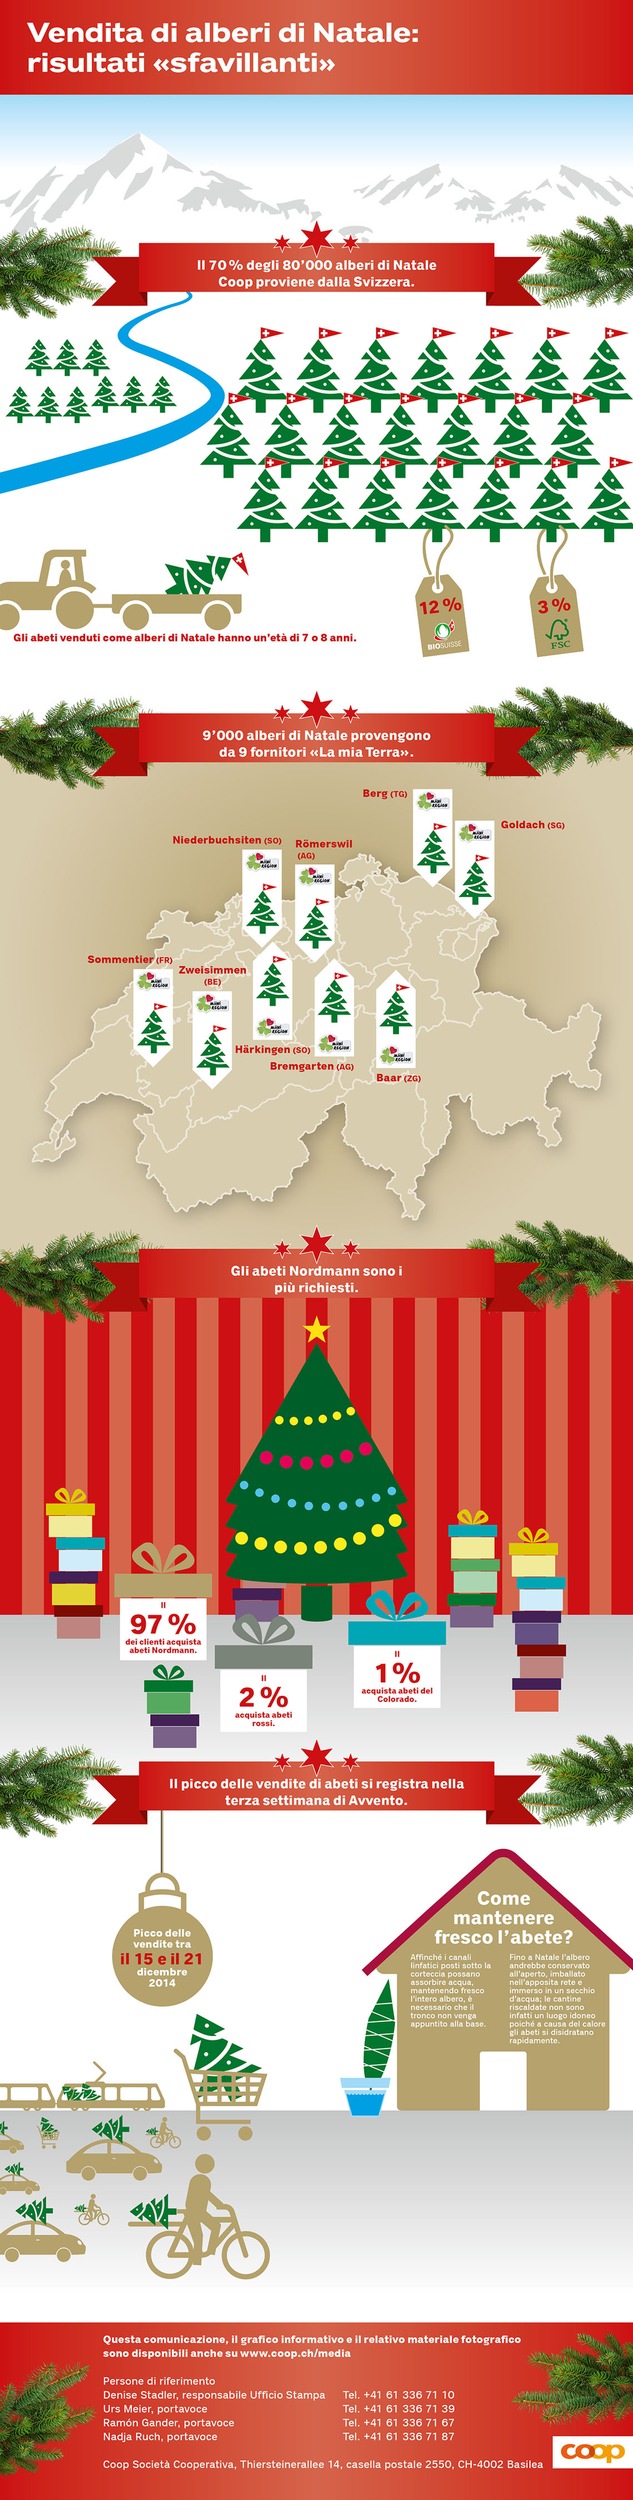 7 alberi di Natale su 10 provengono dalla Svizzera / Fatti, non parole n. 300: Coop ha un debole per gli alberi di Natale svizzeri